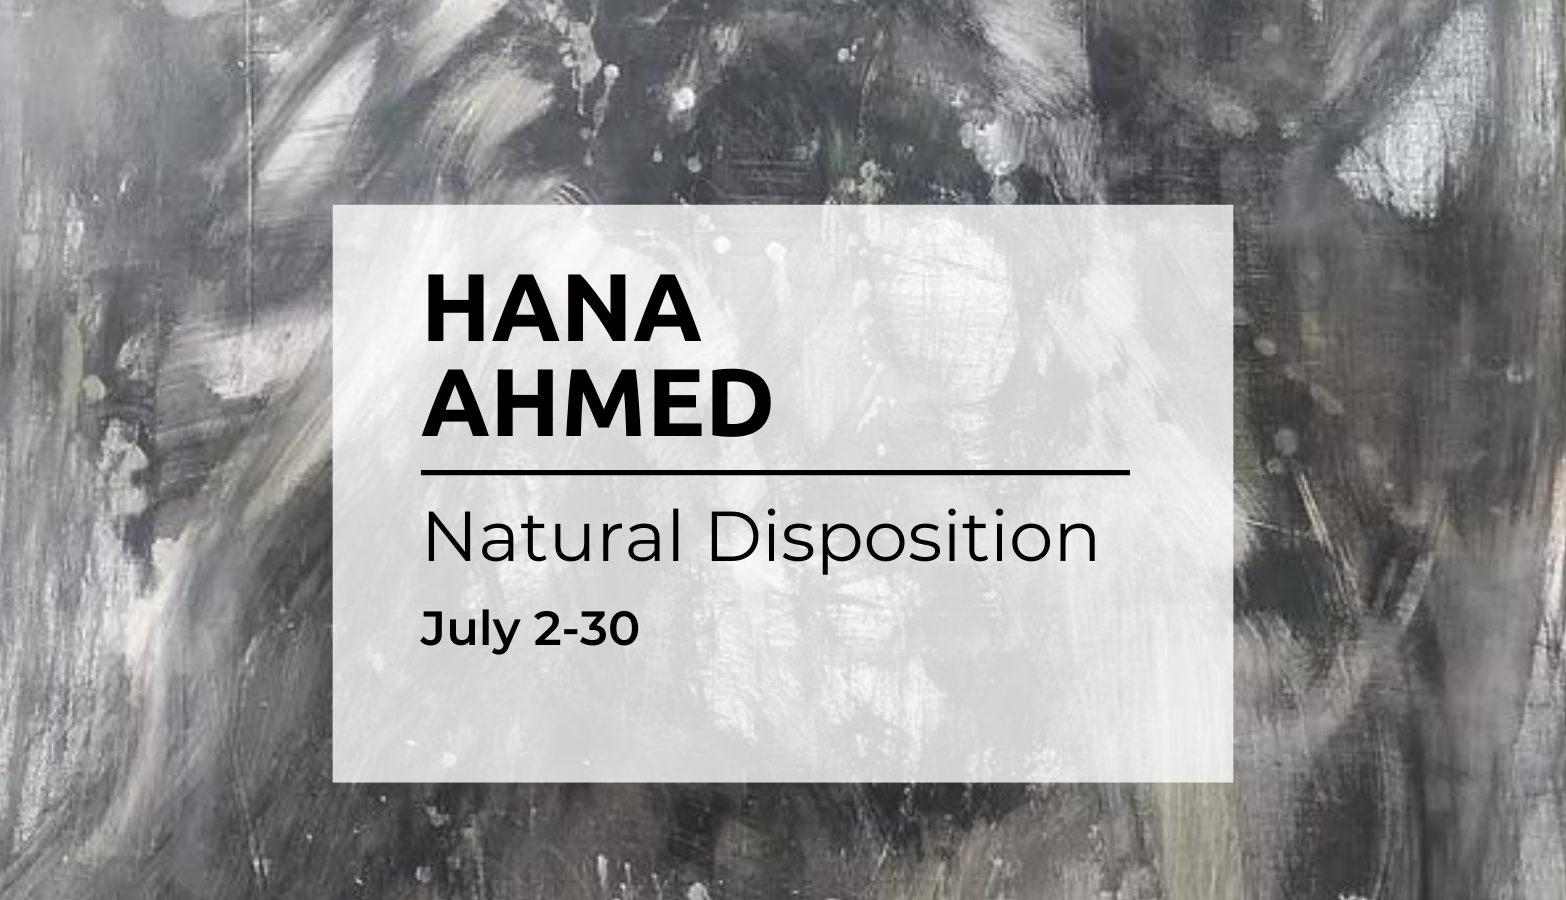 Hana Ahmed Natural Disposition July 2-30